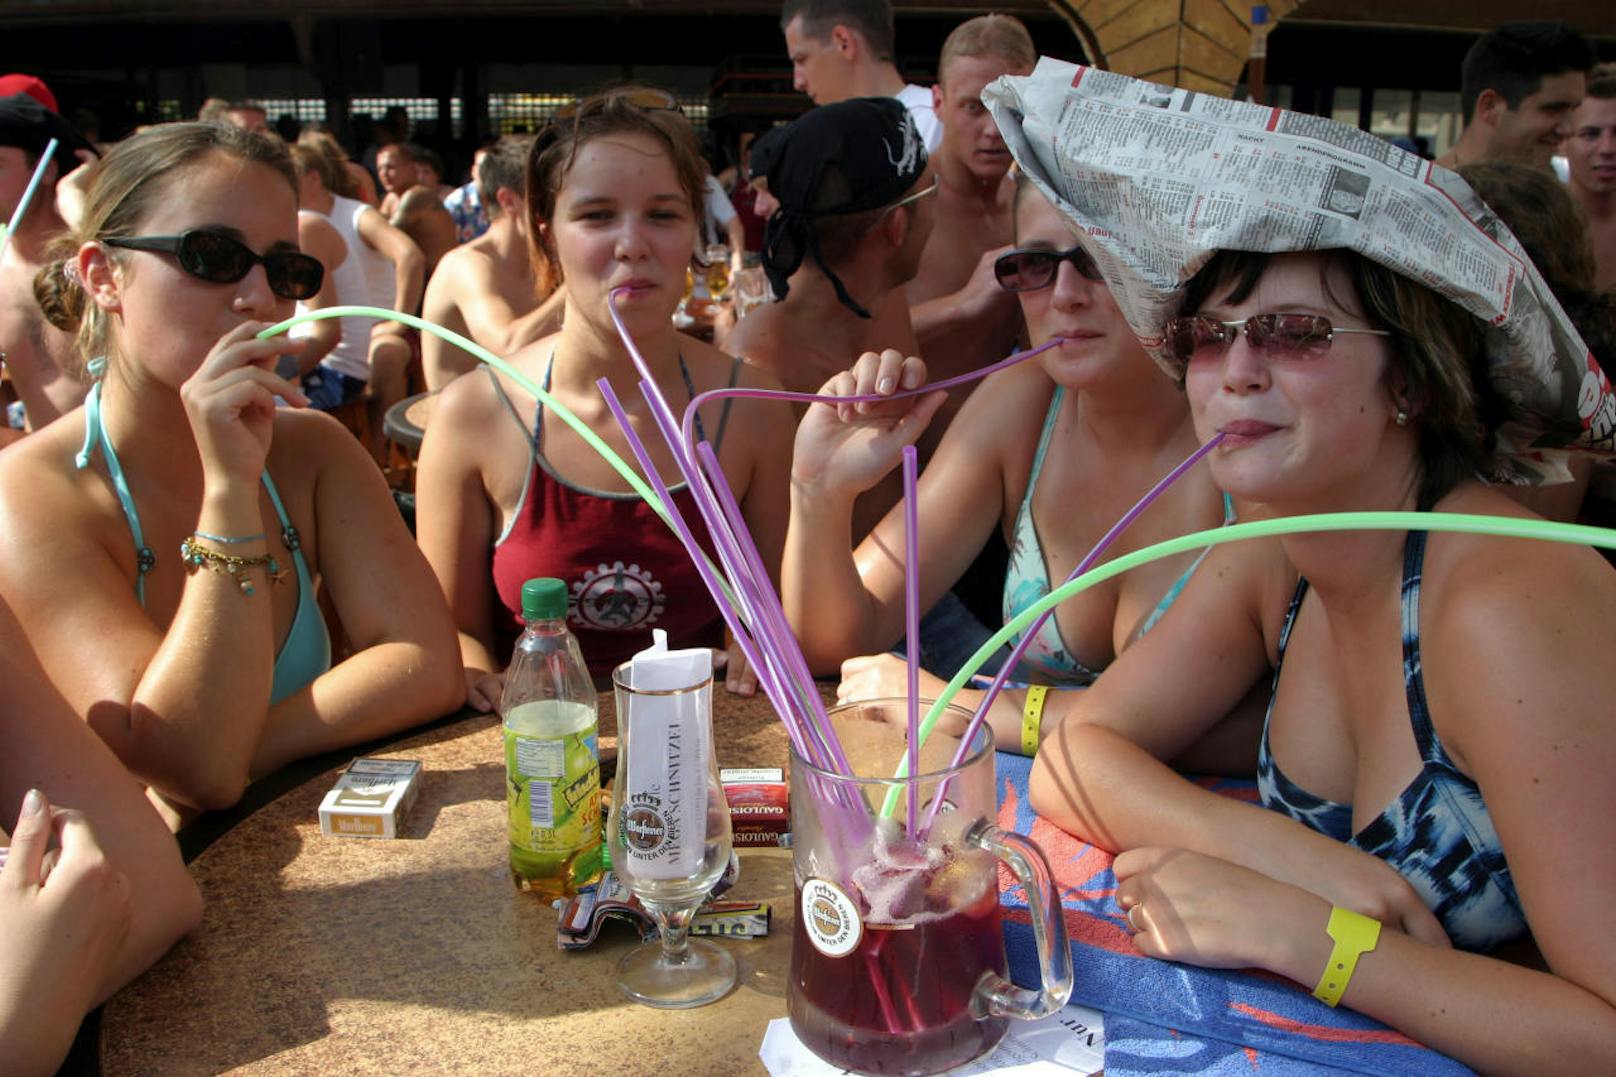 Besonders die Playa de El Arenal, von deutschen Touristen oft umgangssprachlich "Ballermann" genannt, ist für alkoholgetränkten Billigtourismus bekannt.